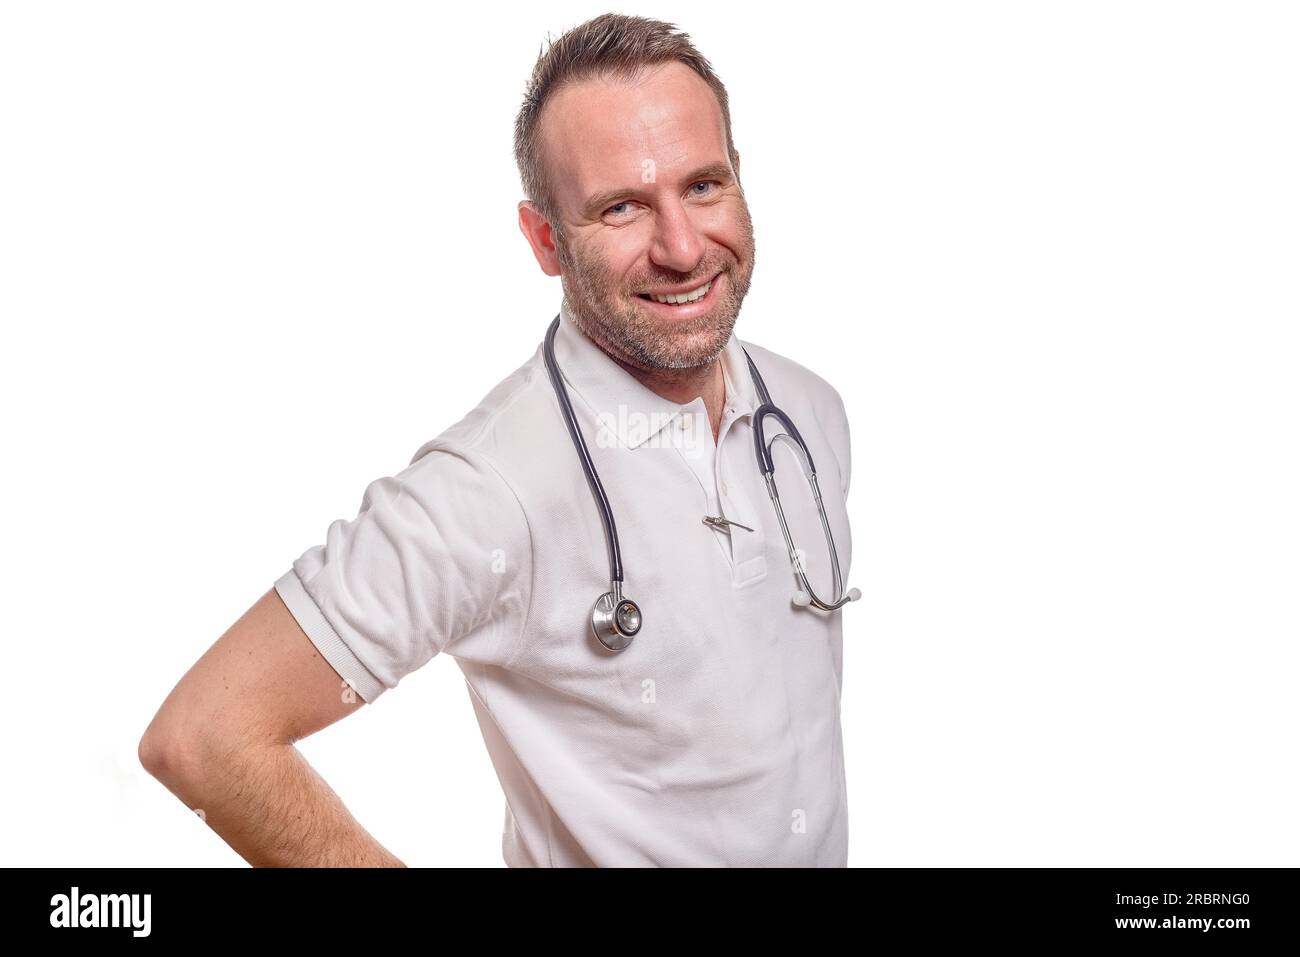 Beau médecin ou infirmière homme confiant debout dans une chemise blanche avec un stéthoscope autour de son cou isolé sur blanc Banque D'Images